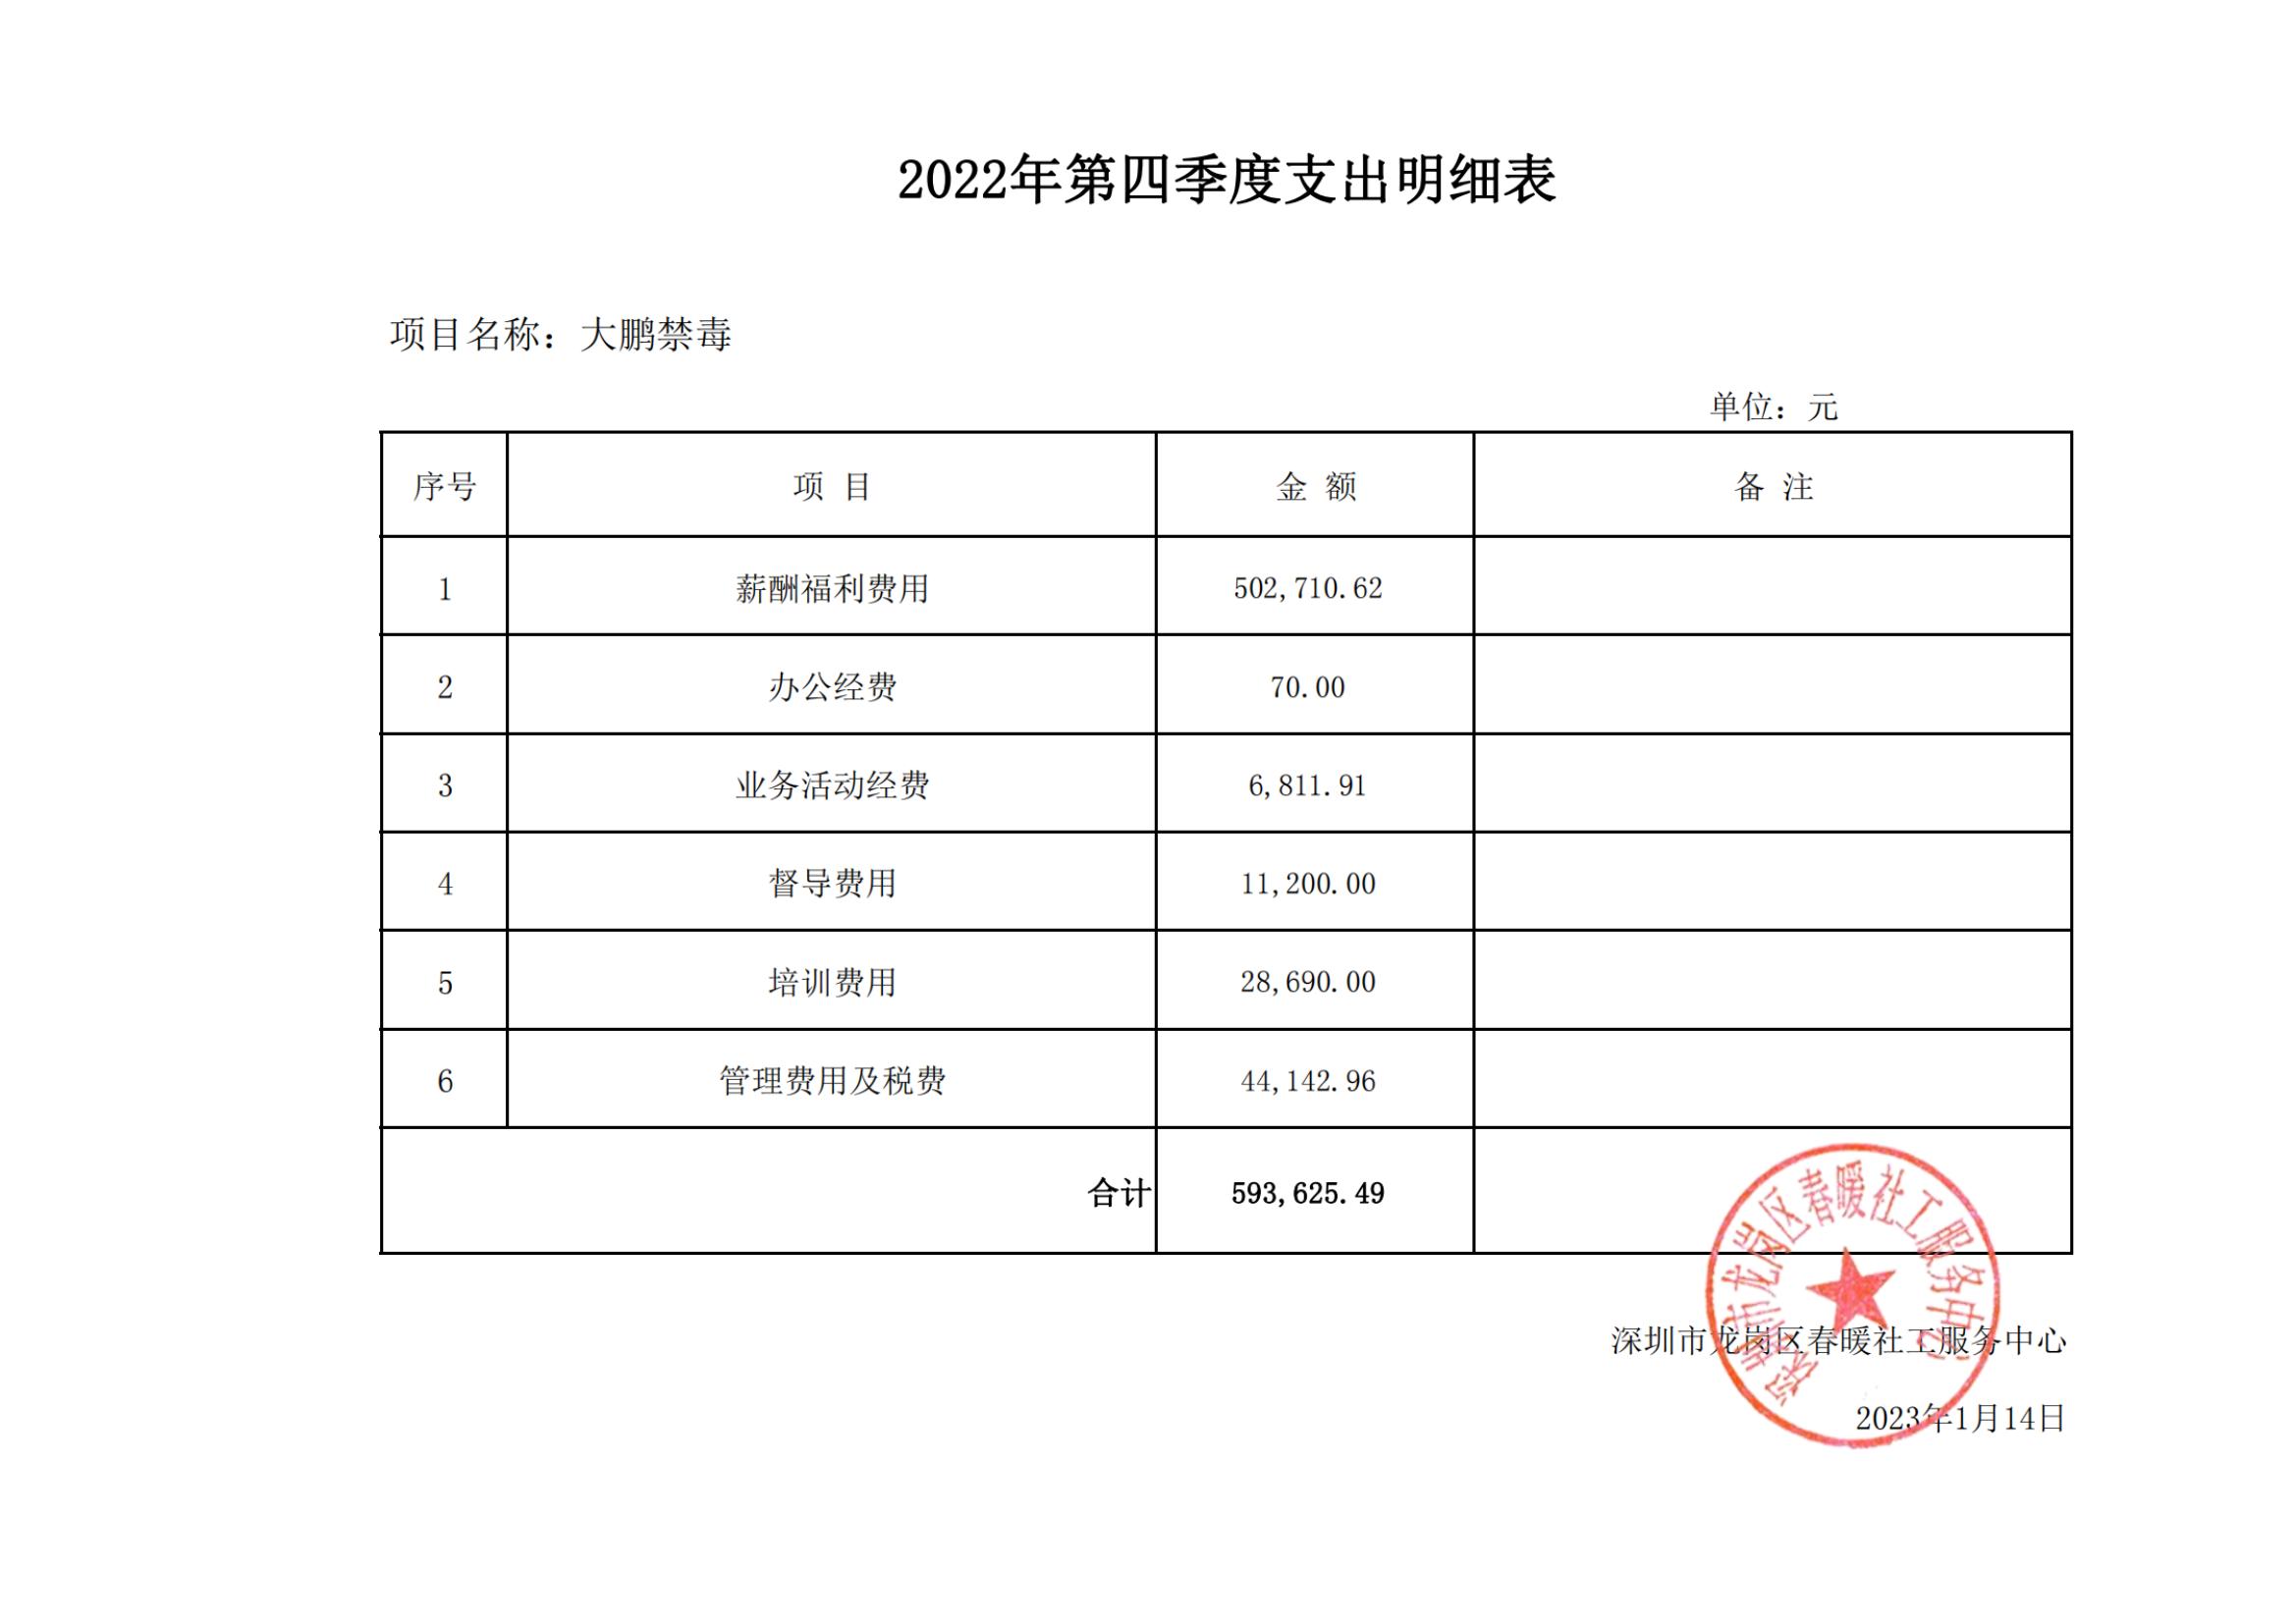 大鹏公安分局专职禁毒社工服务项目2022年第四季度公示表